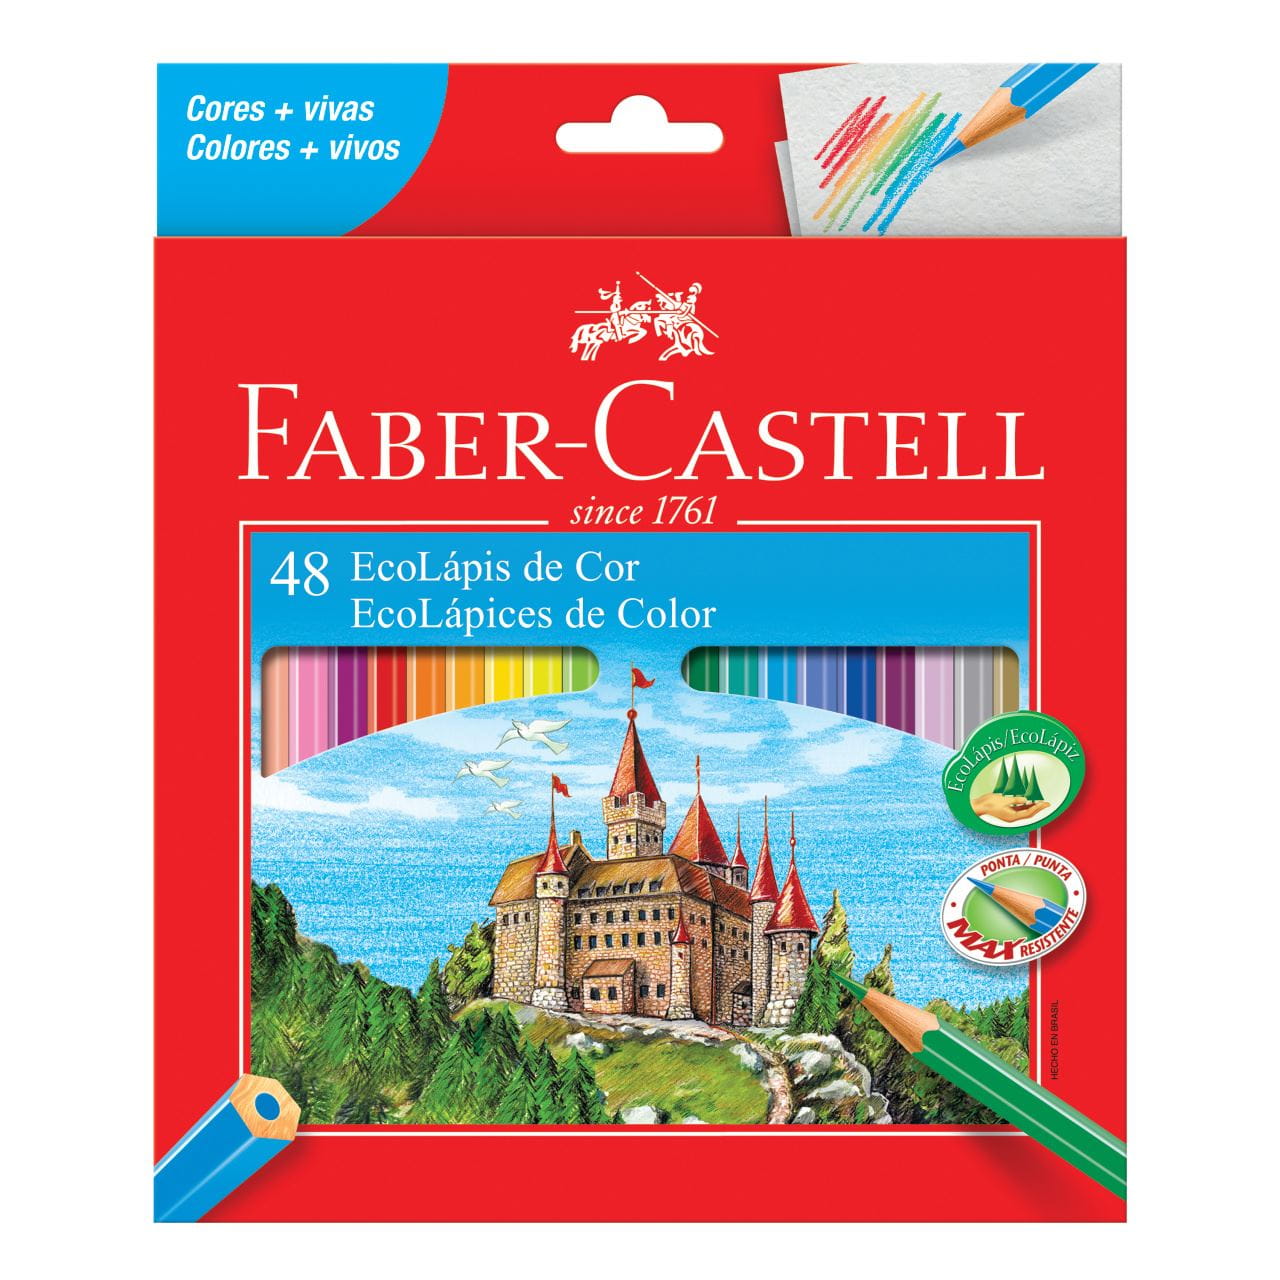 Faber-Castell - Ecolapis de Cor 48 Cores